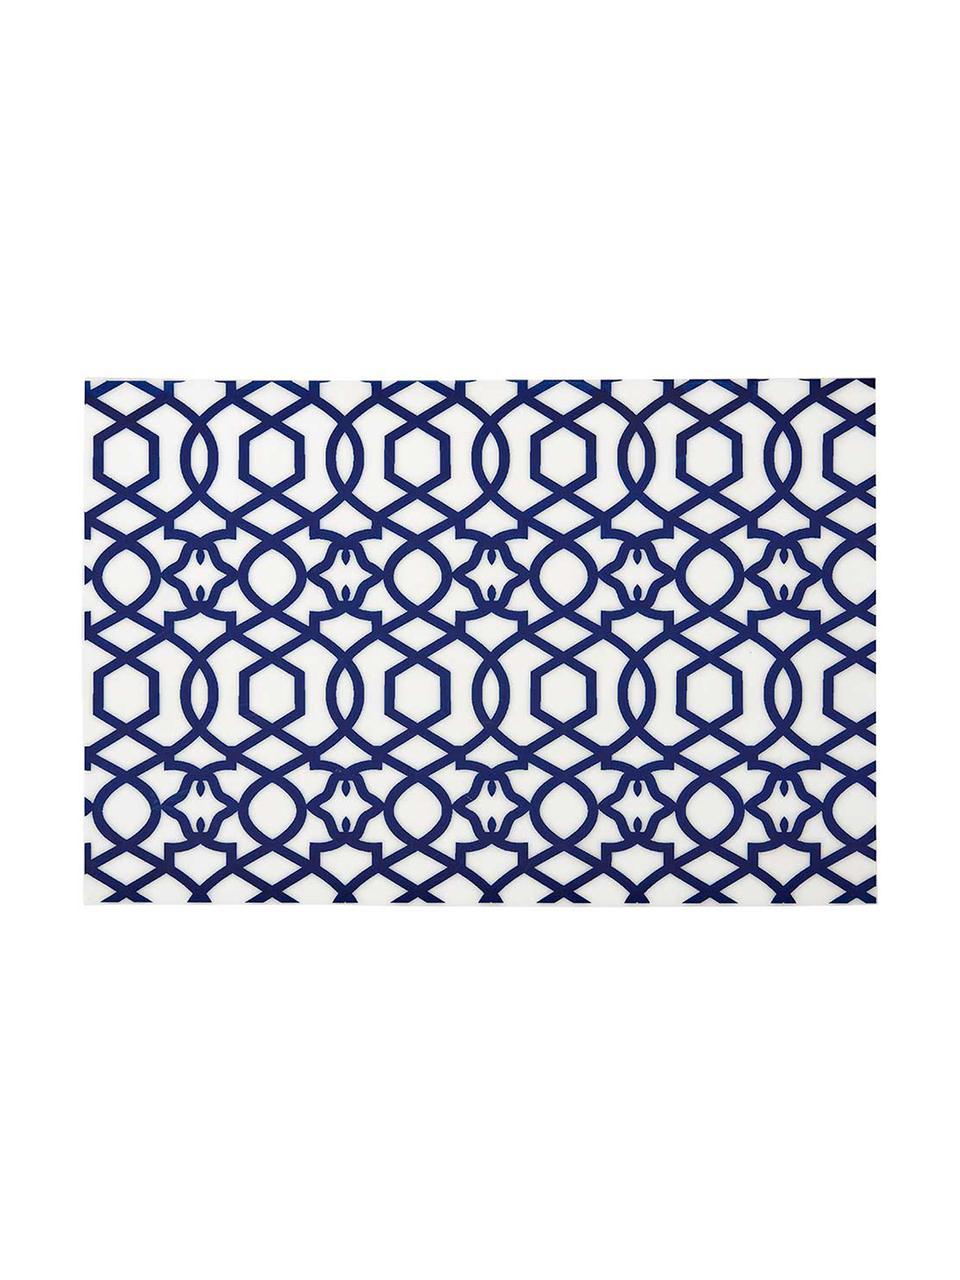 Podkładka z tworzywa sztucznego Tropic, 4 szt., Tworzywo sztuczne (PVC), Ciemny niebieski, S 30 x D 45 cm